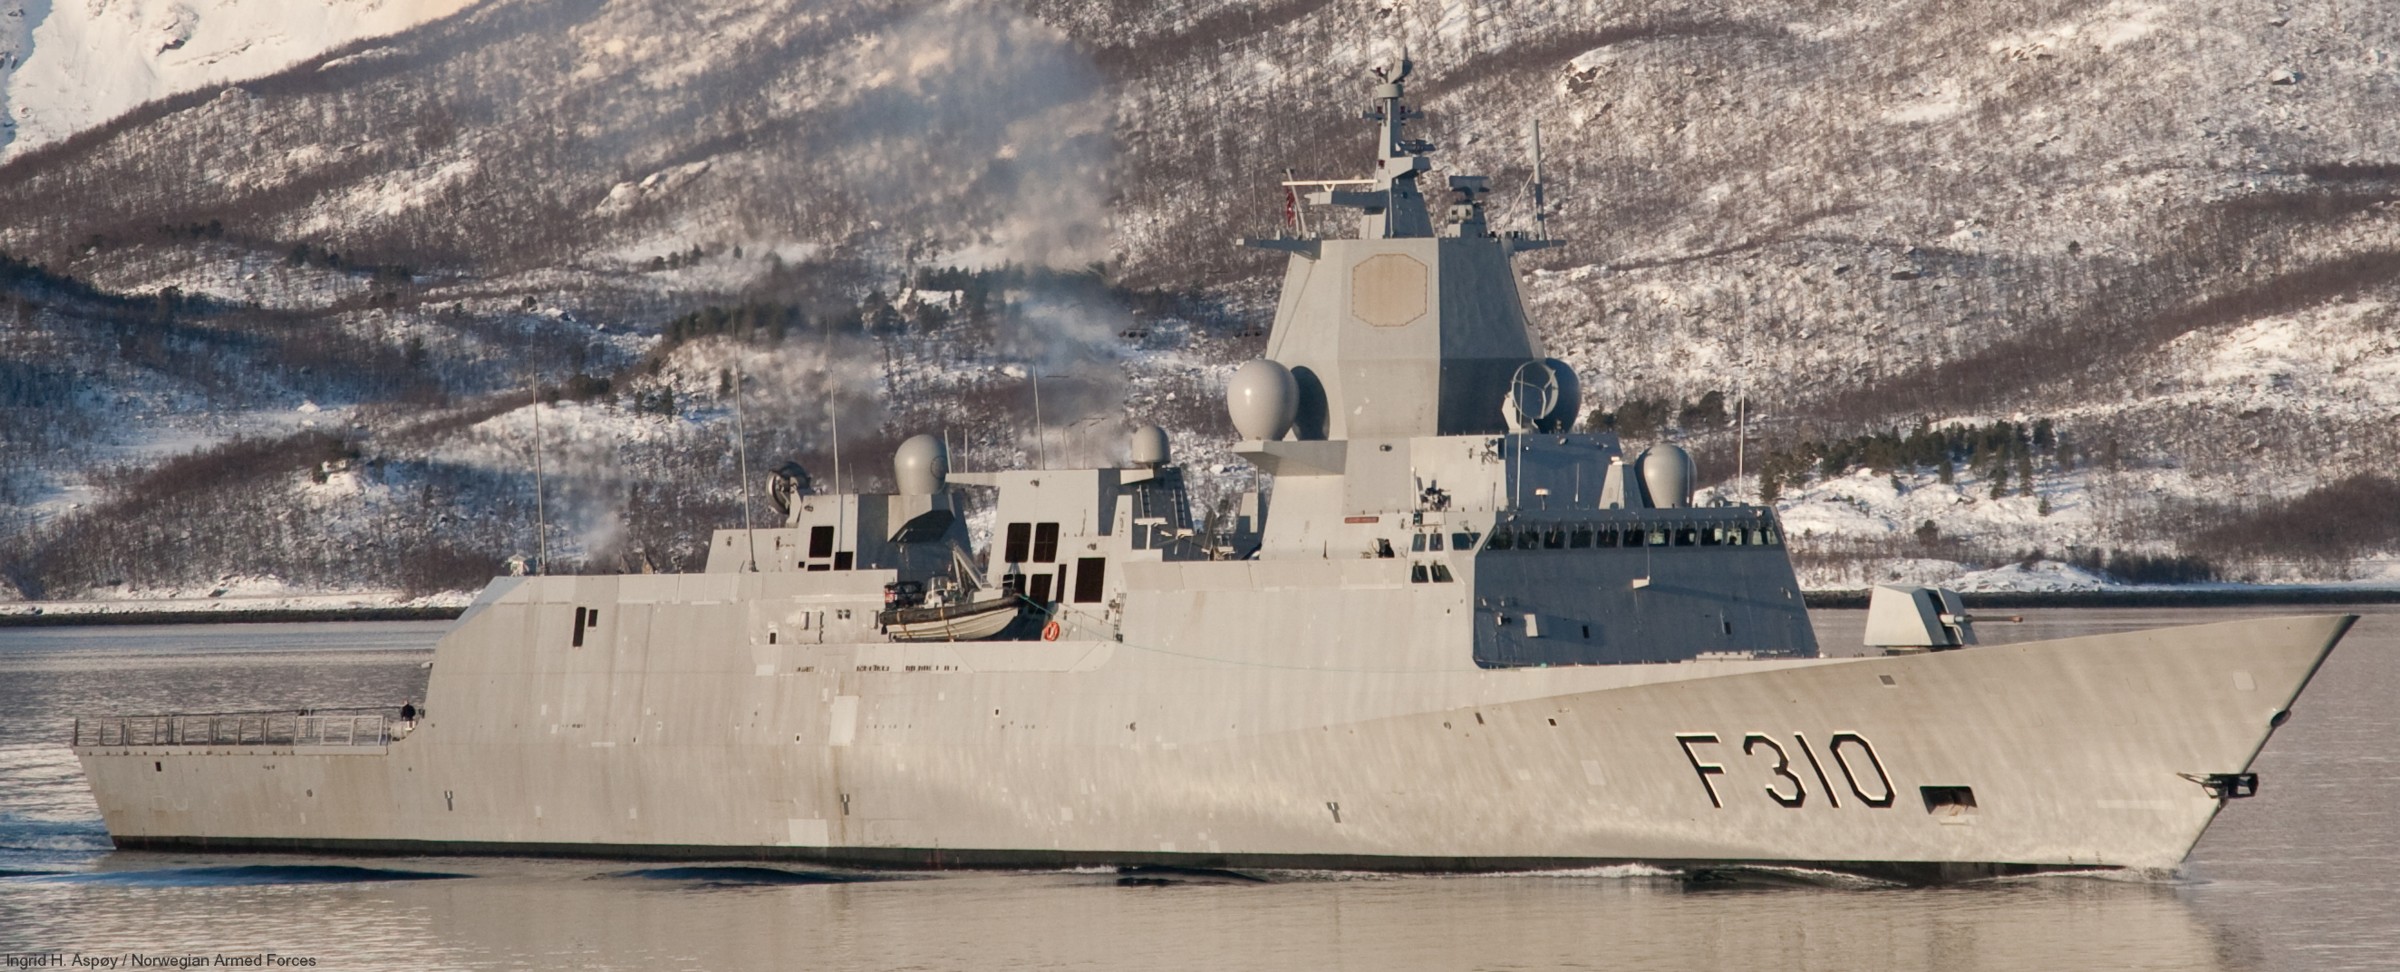 f-310 fridtjof nansen hnoms knm frigate royal norwegian navy sjoforsvaret 13